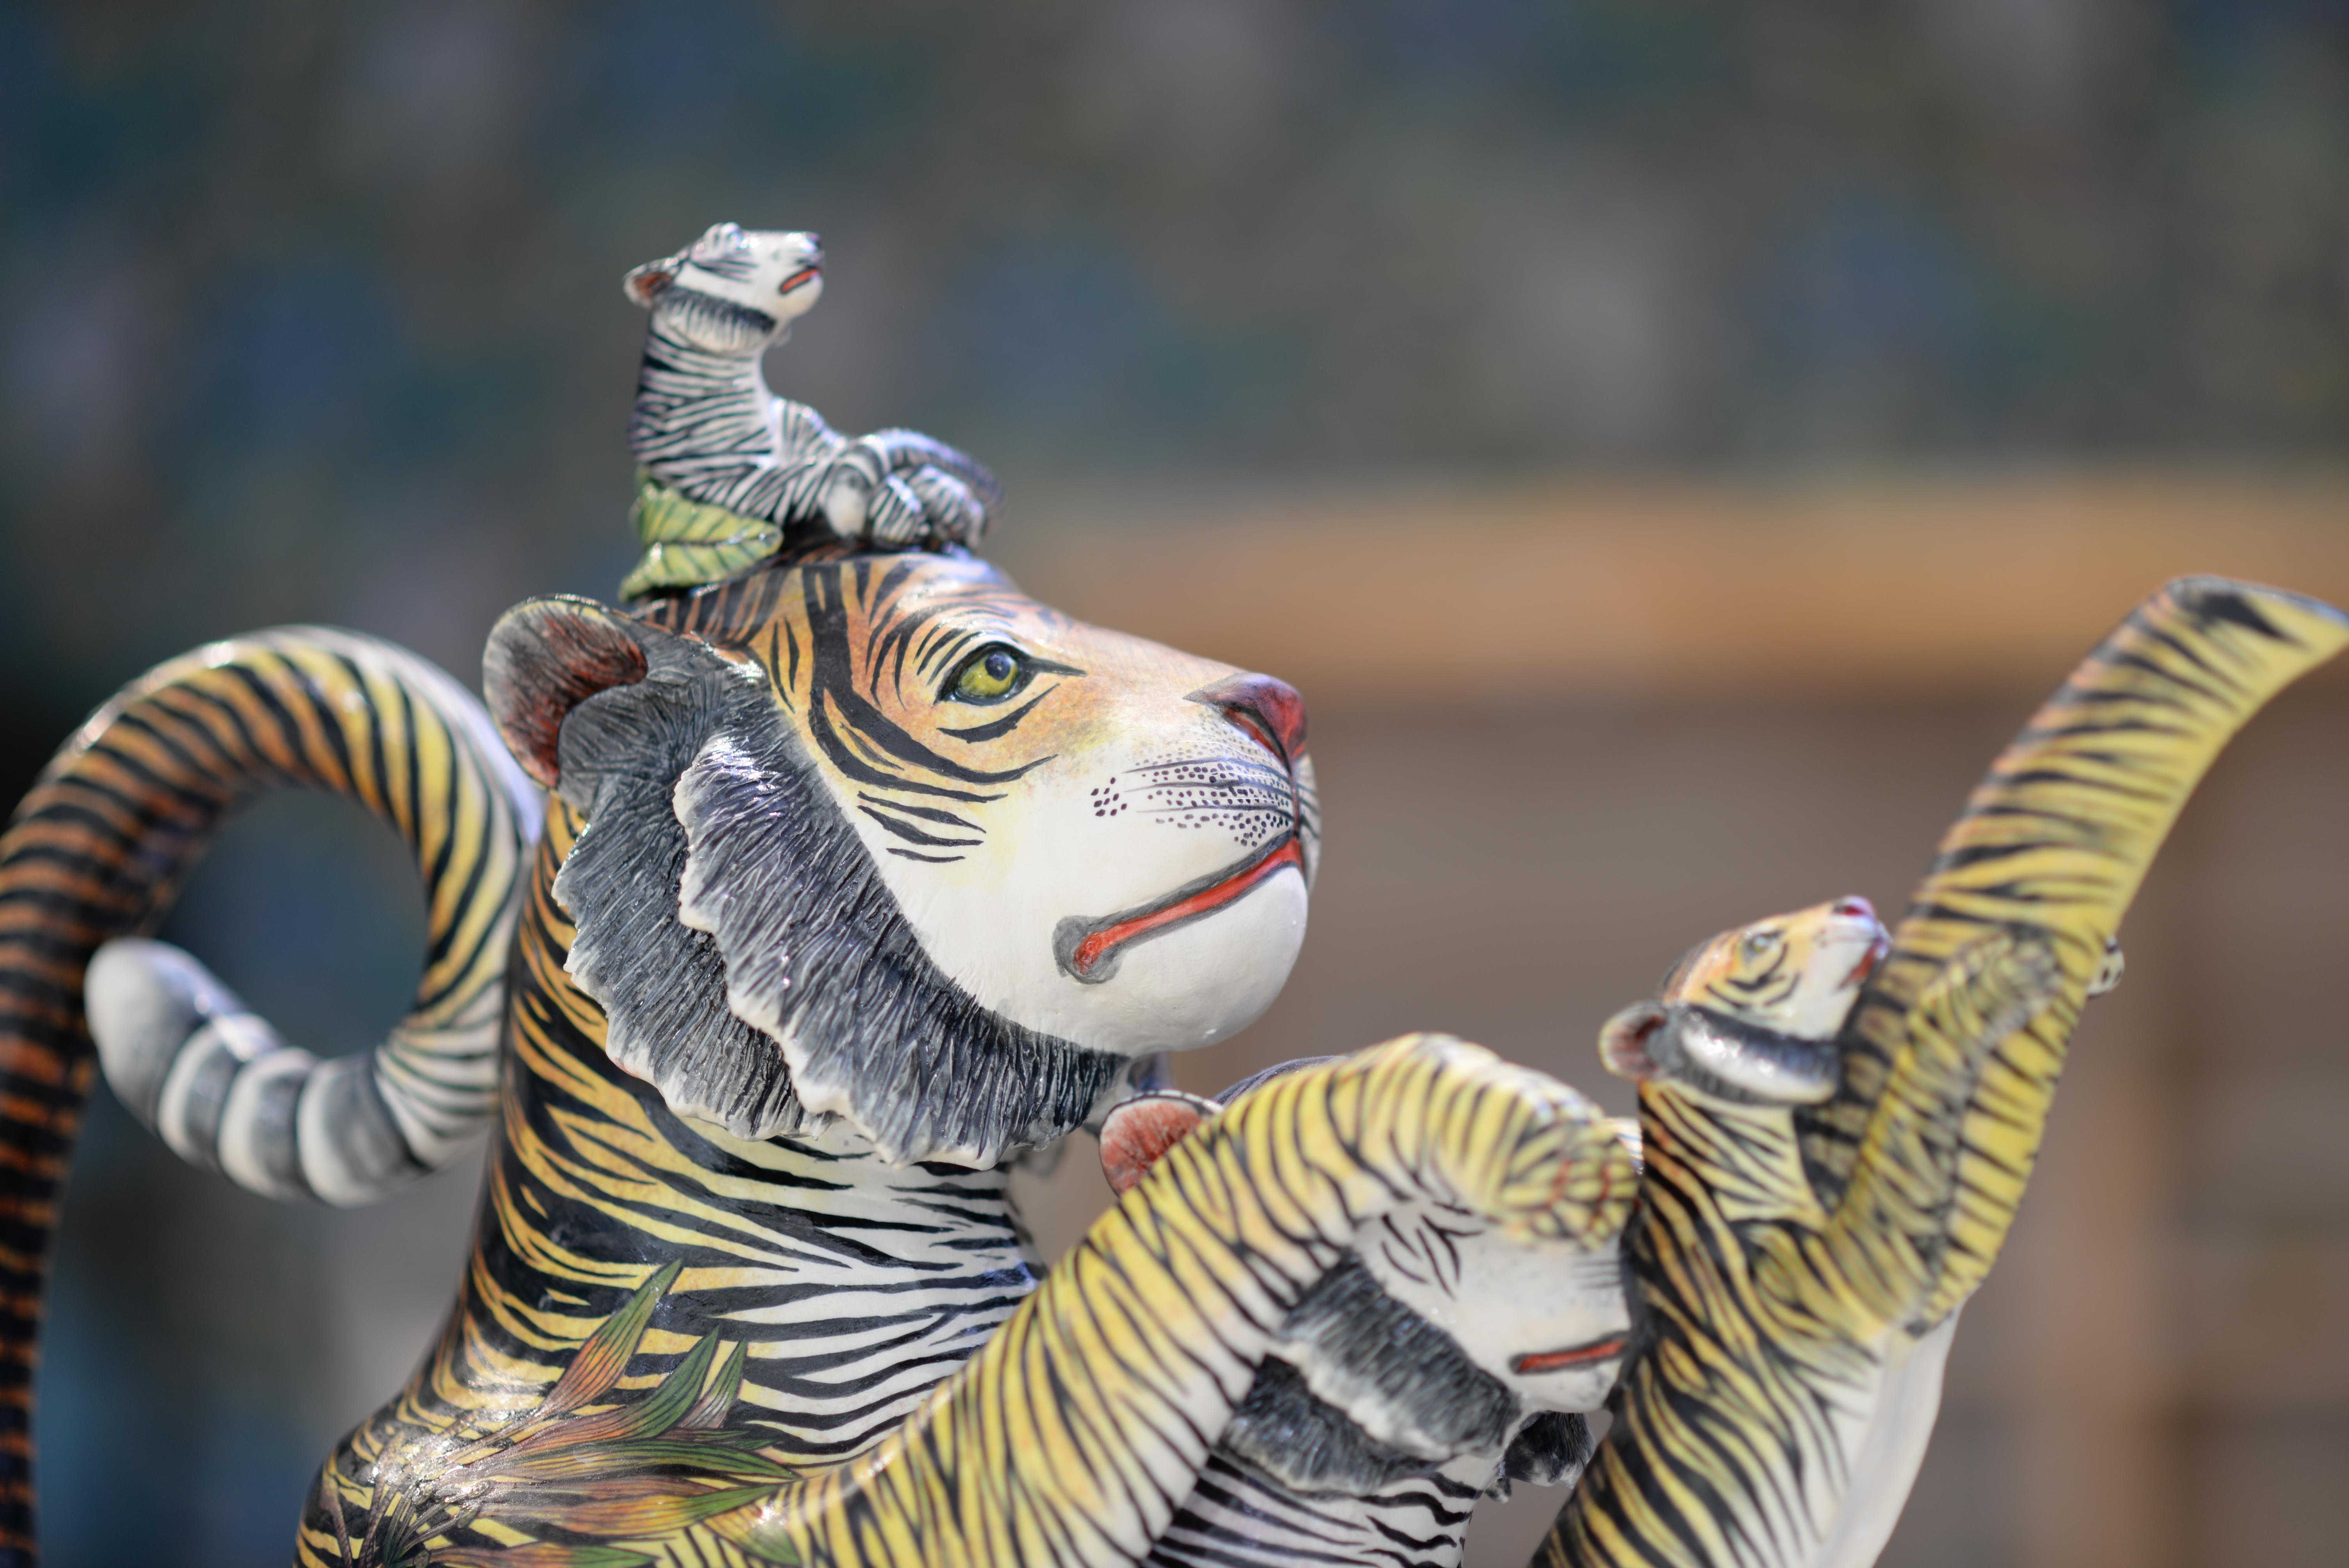 Tauchen Sie ein in die fesselnde Anziehungskraft der Tiger-Teekanne, einem Meisterwerk der südafrikanischen Keramikkunst. Diese Teekanne wurde von den geschickten Händen von Sfiso Mvelase gefertigt und zeichnet sich durch lebensechte skulpturale